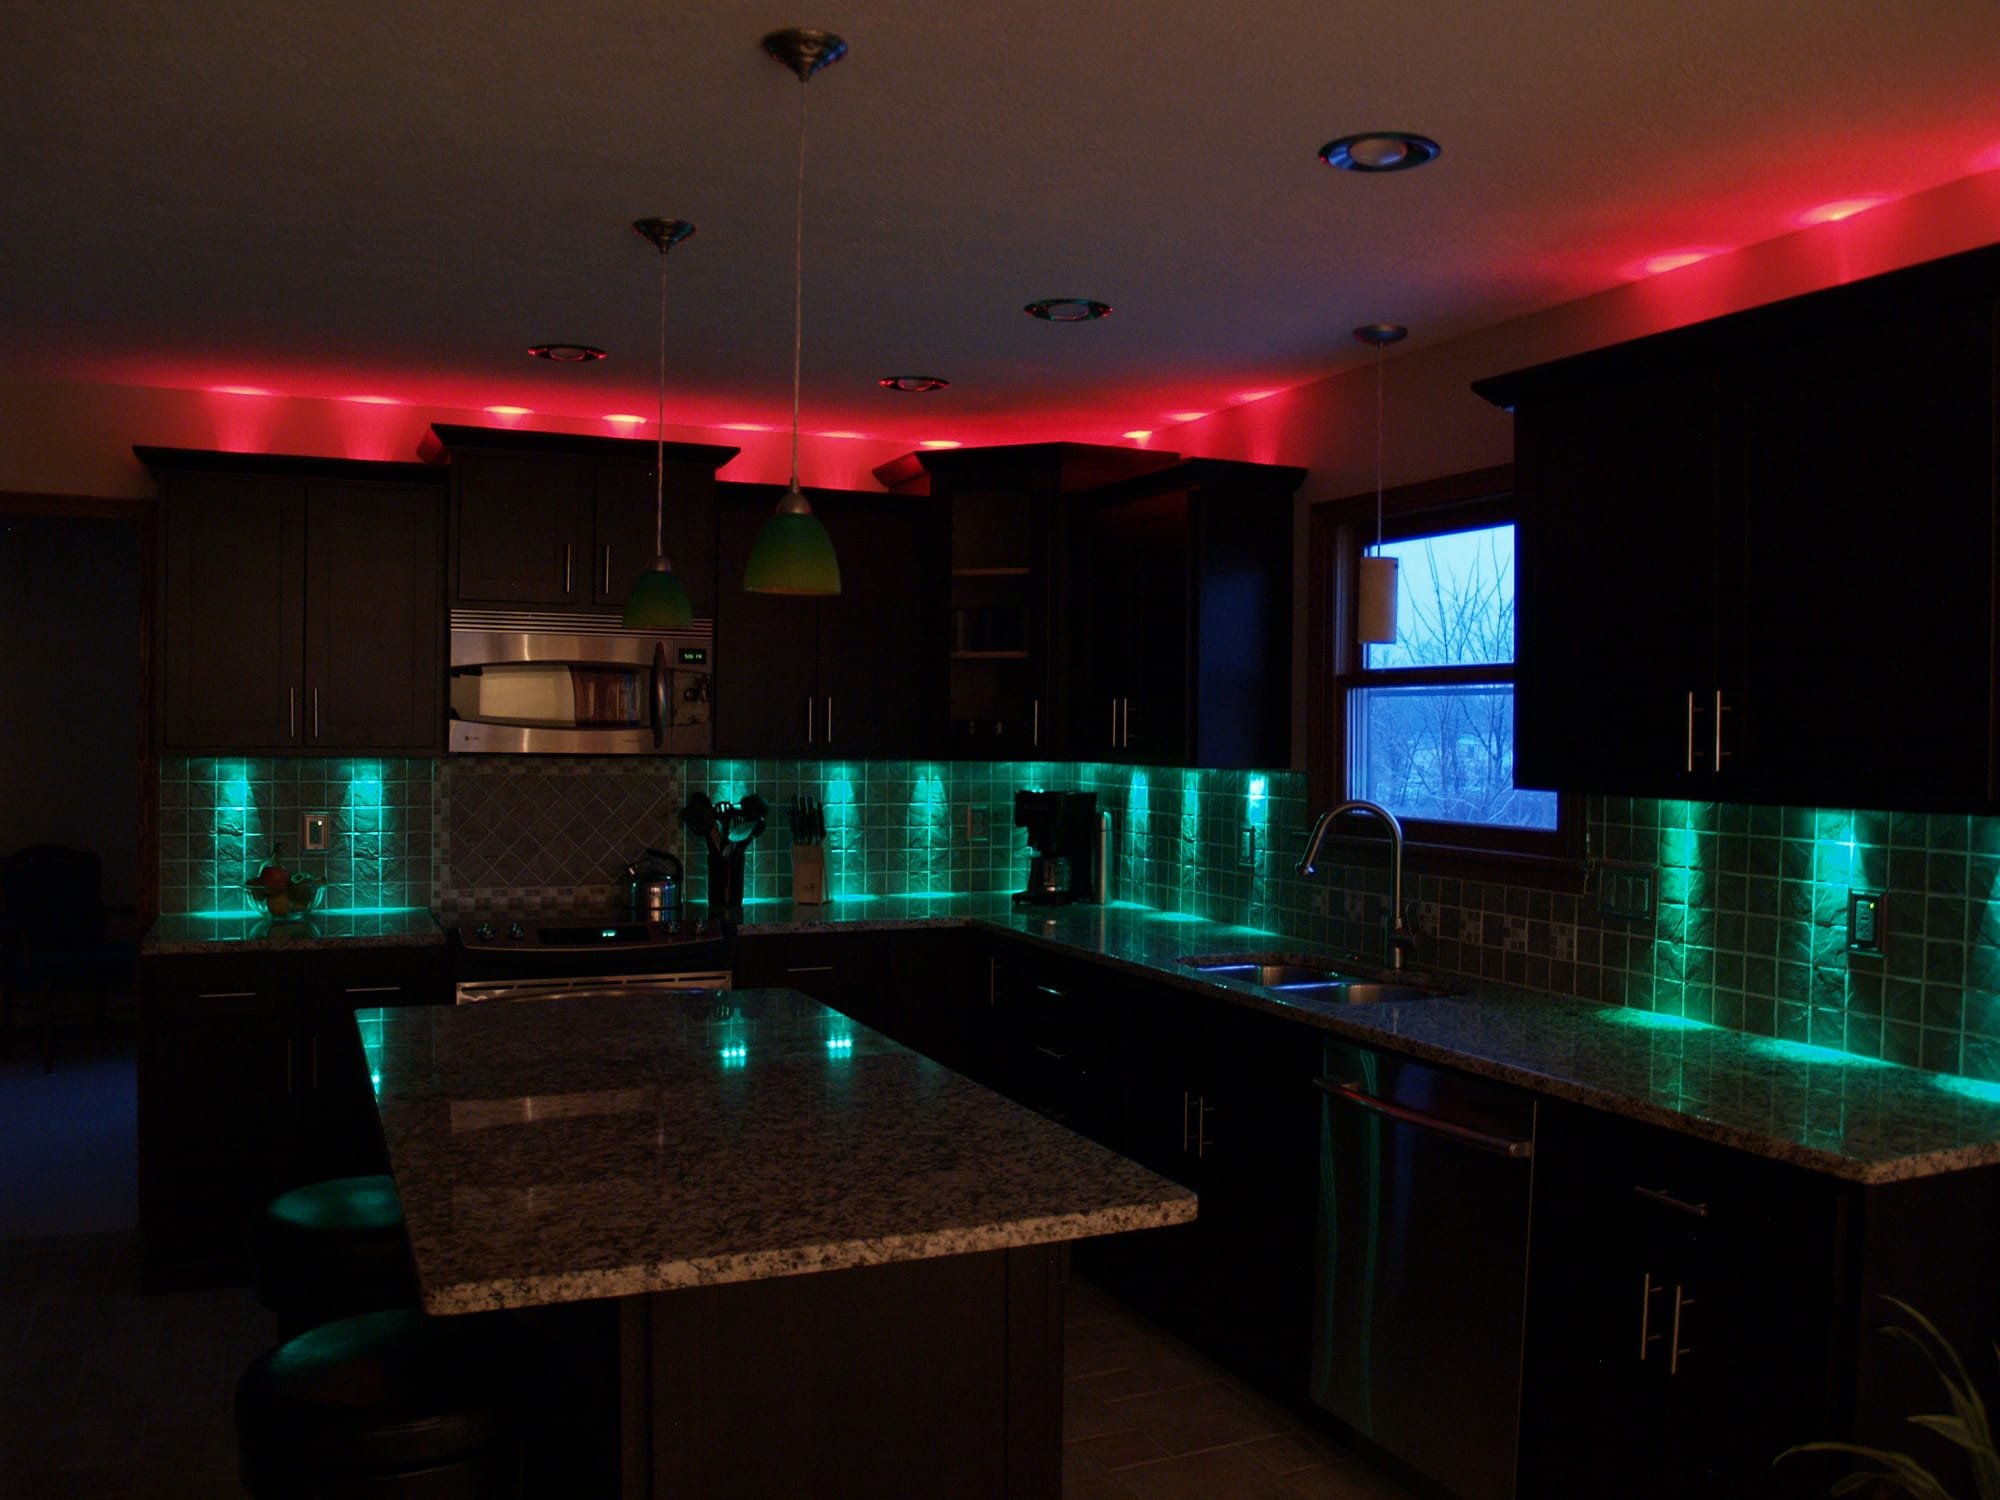 Cómo elegir las tiras de luces LED para gabinetes de cocina